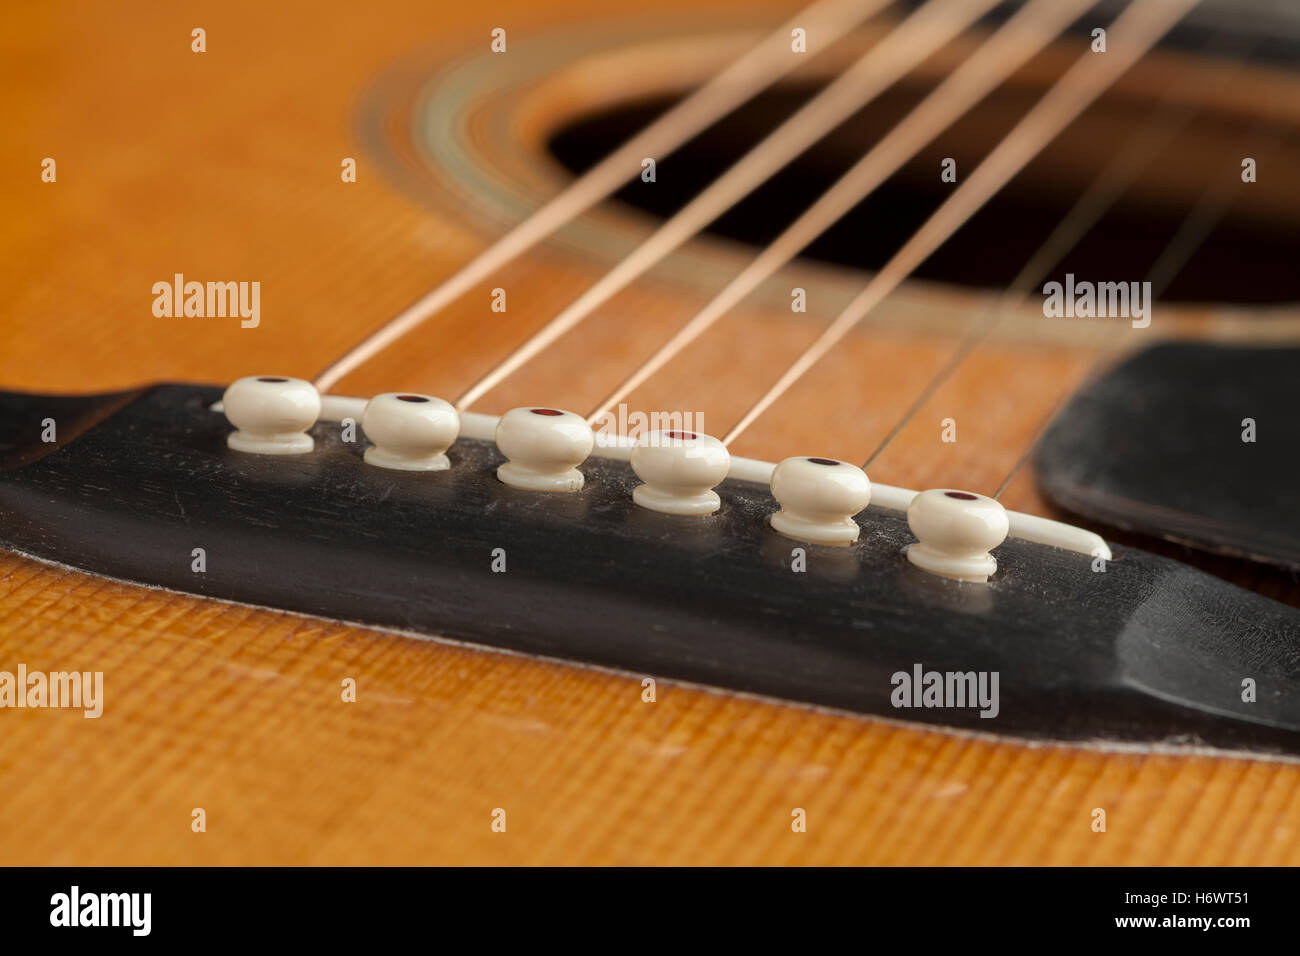 Pont guitare close up Banque D'Images